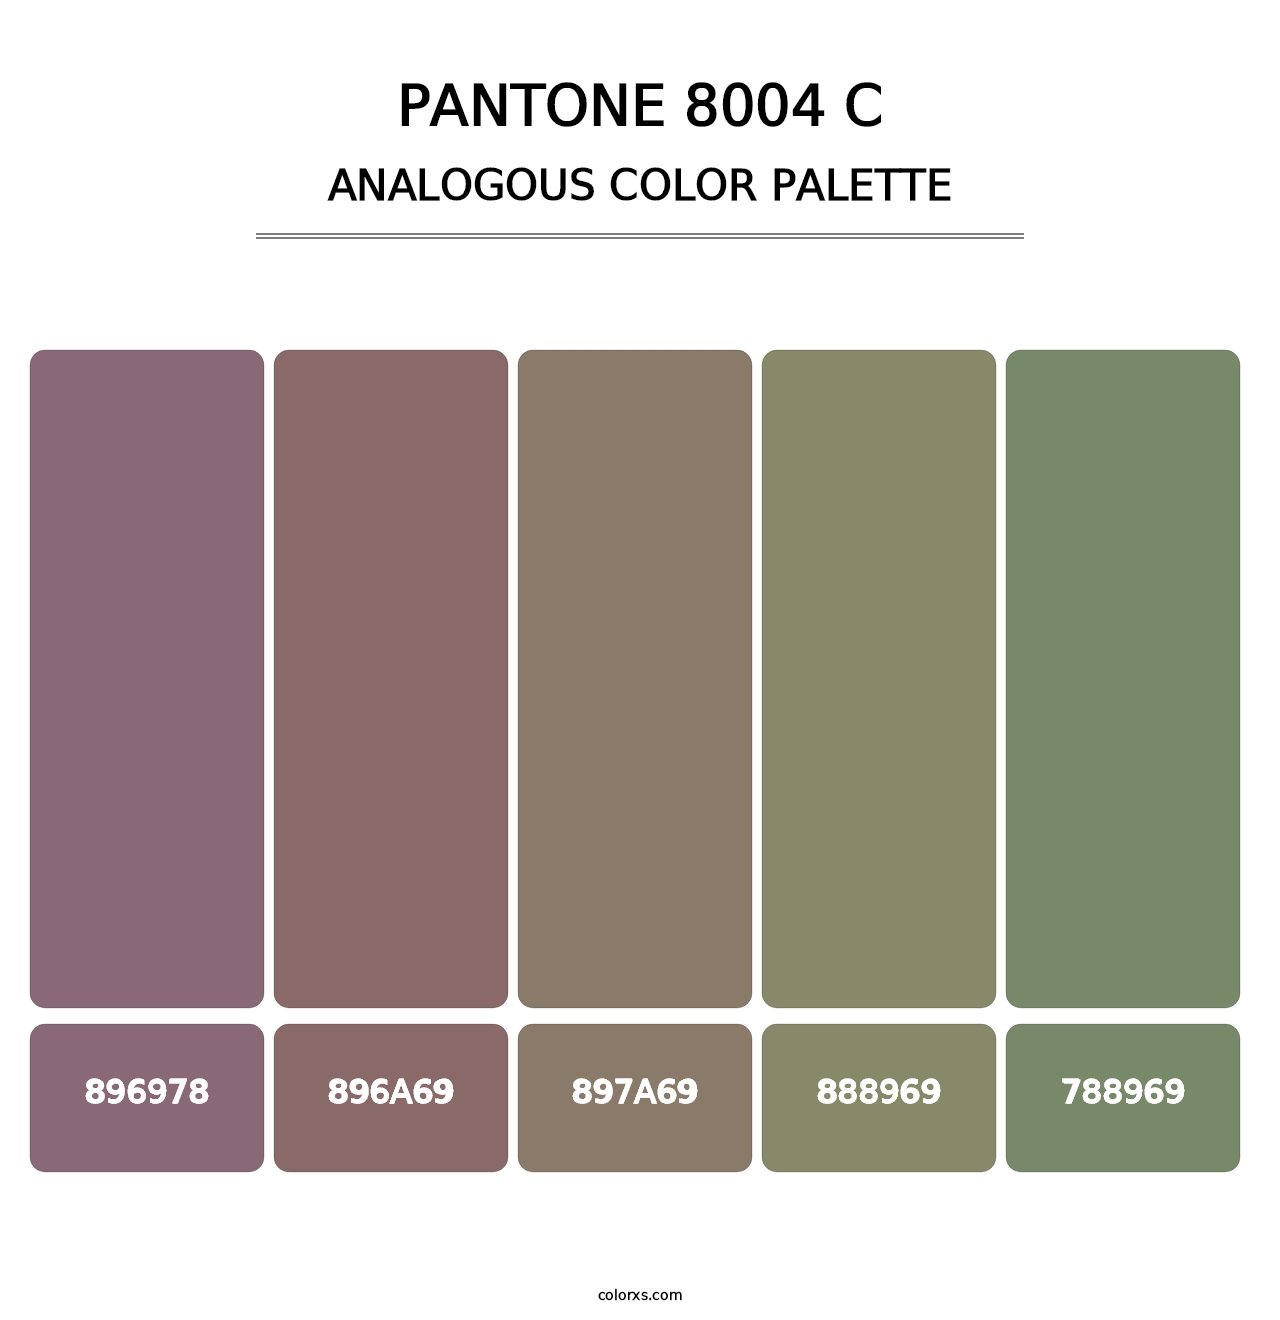 PANTONE 8004 C - Analogous Color Palette